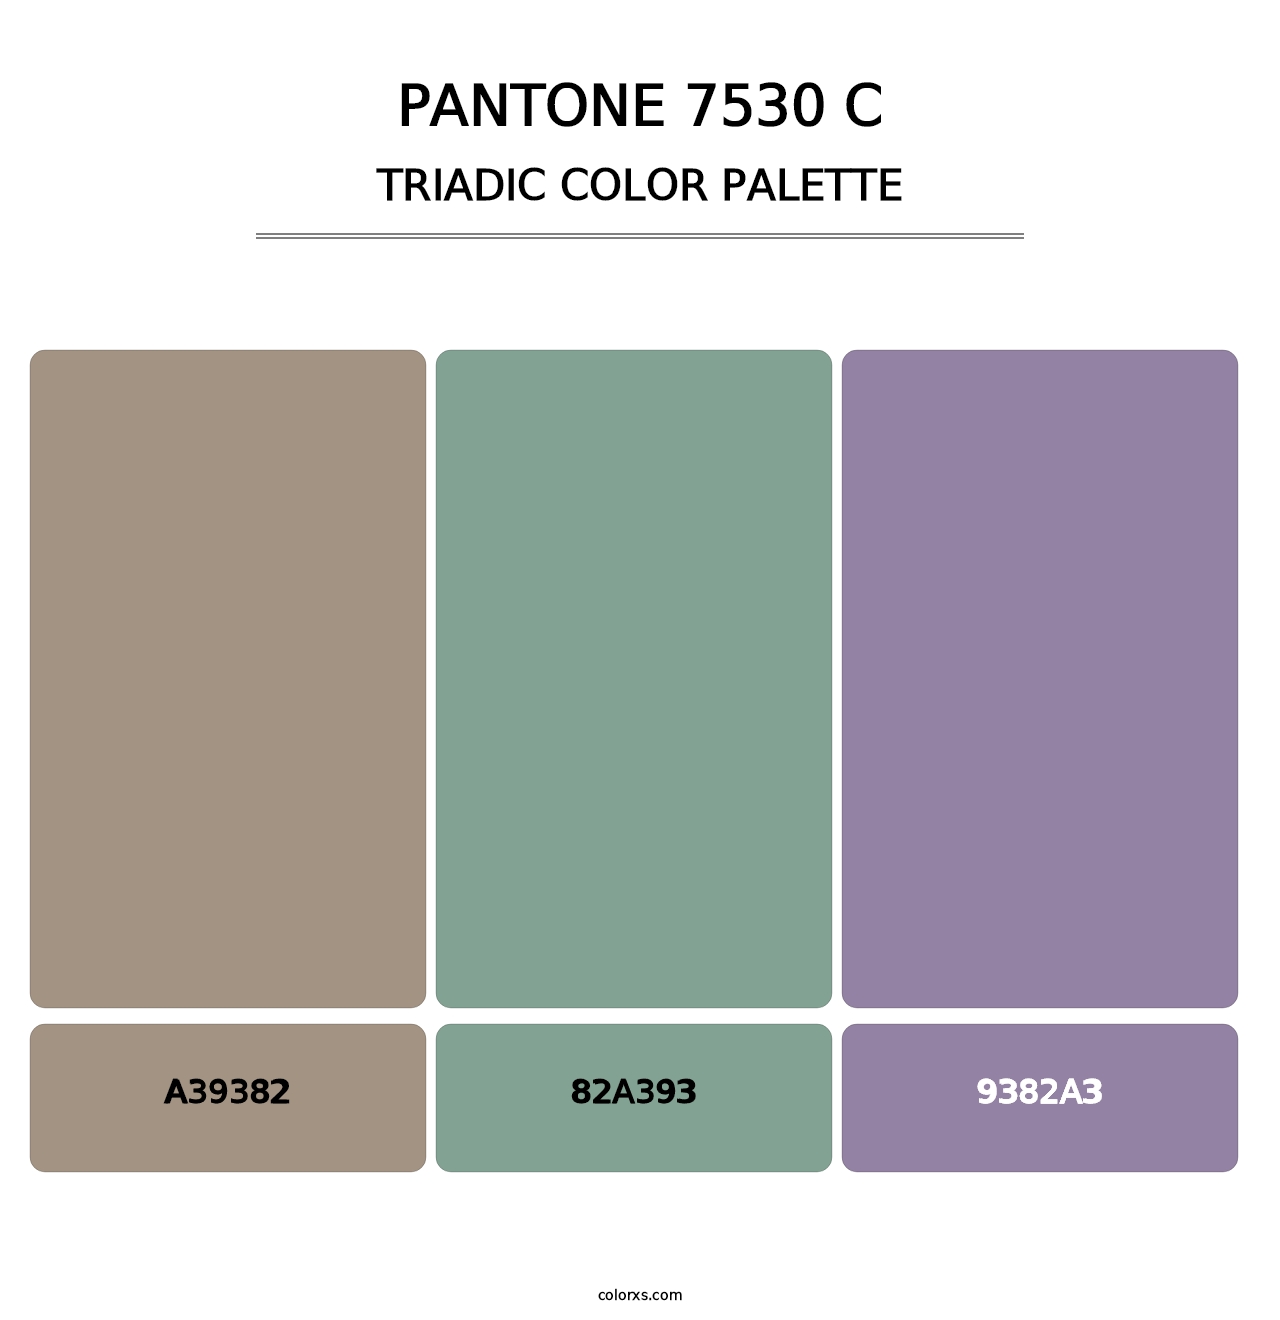 PANTONE 7530 C - Triadic Color Palette